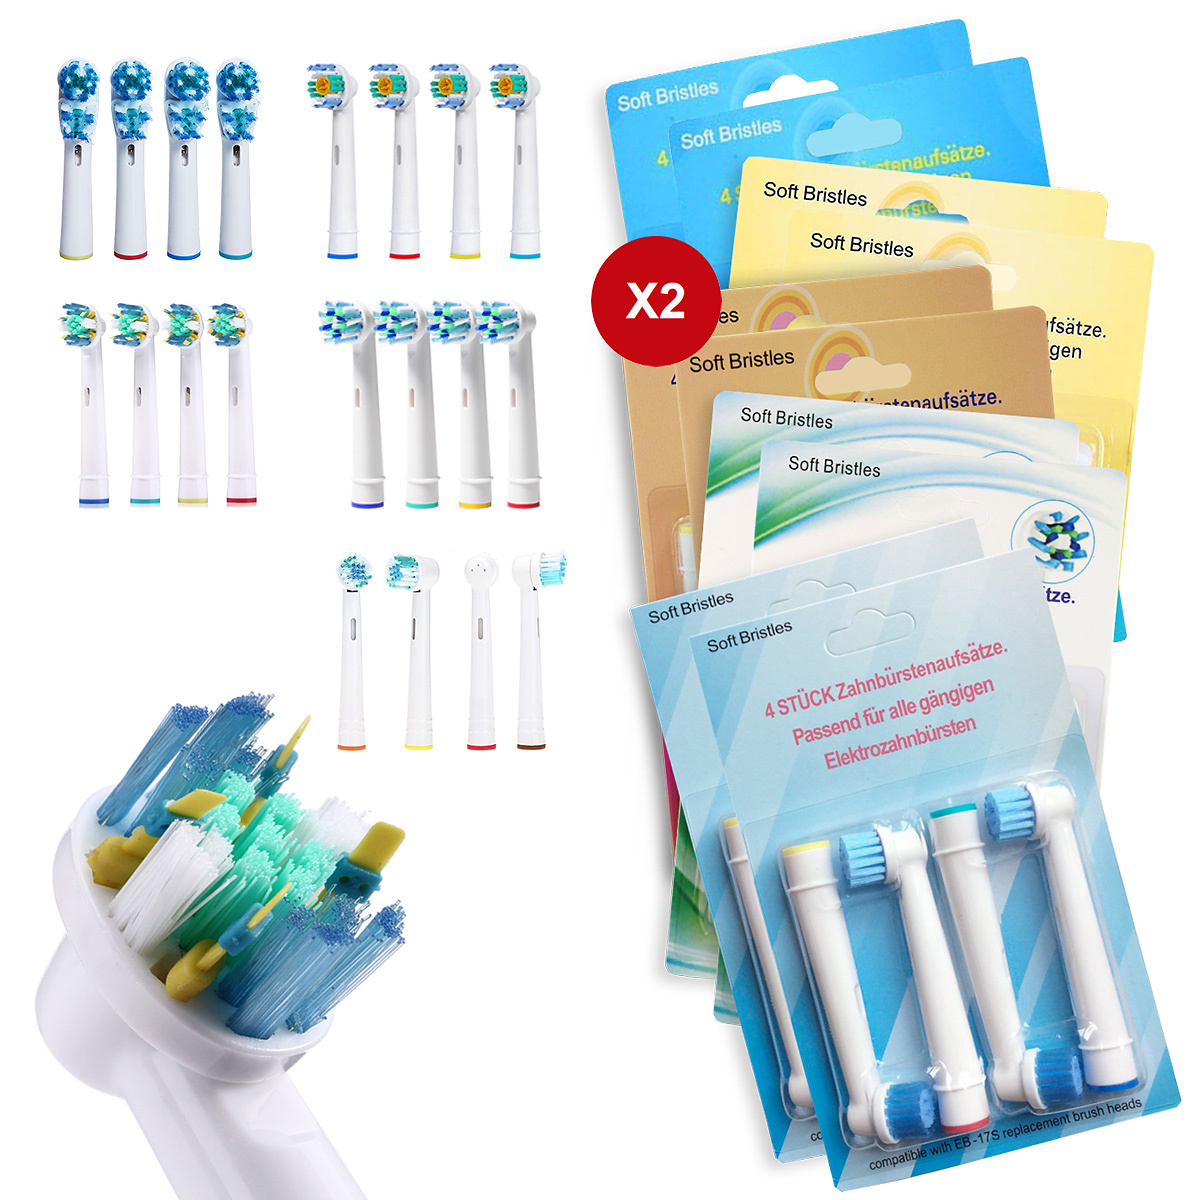 40-pack Oral-B kompatibla tandborsthuvuden, Mixpaket